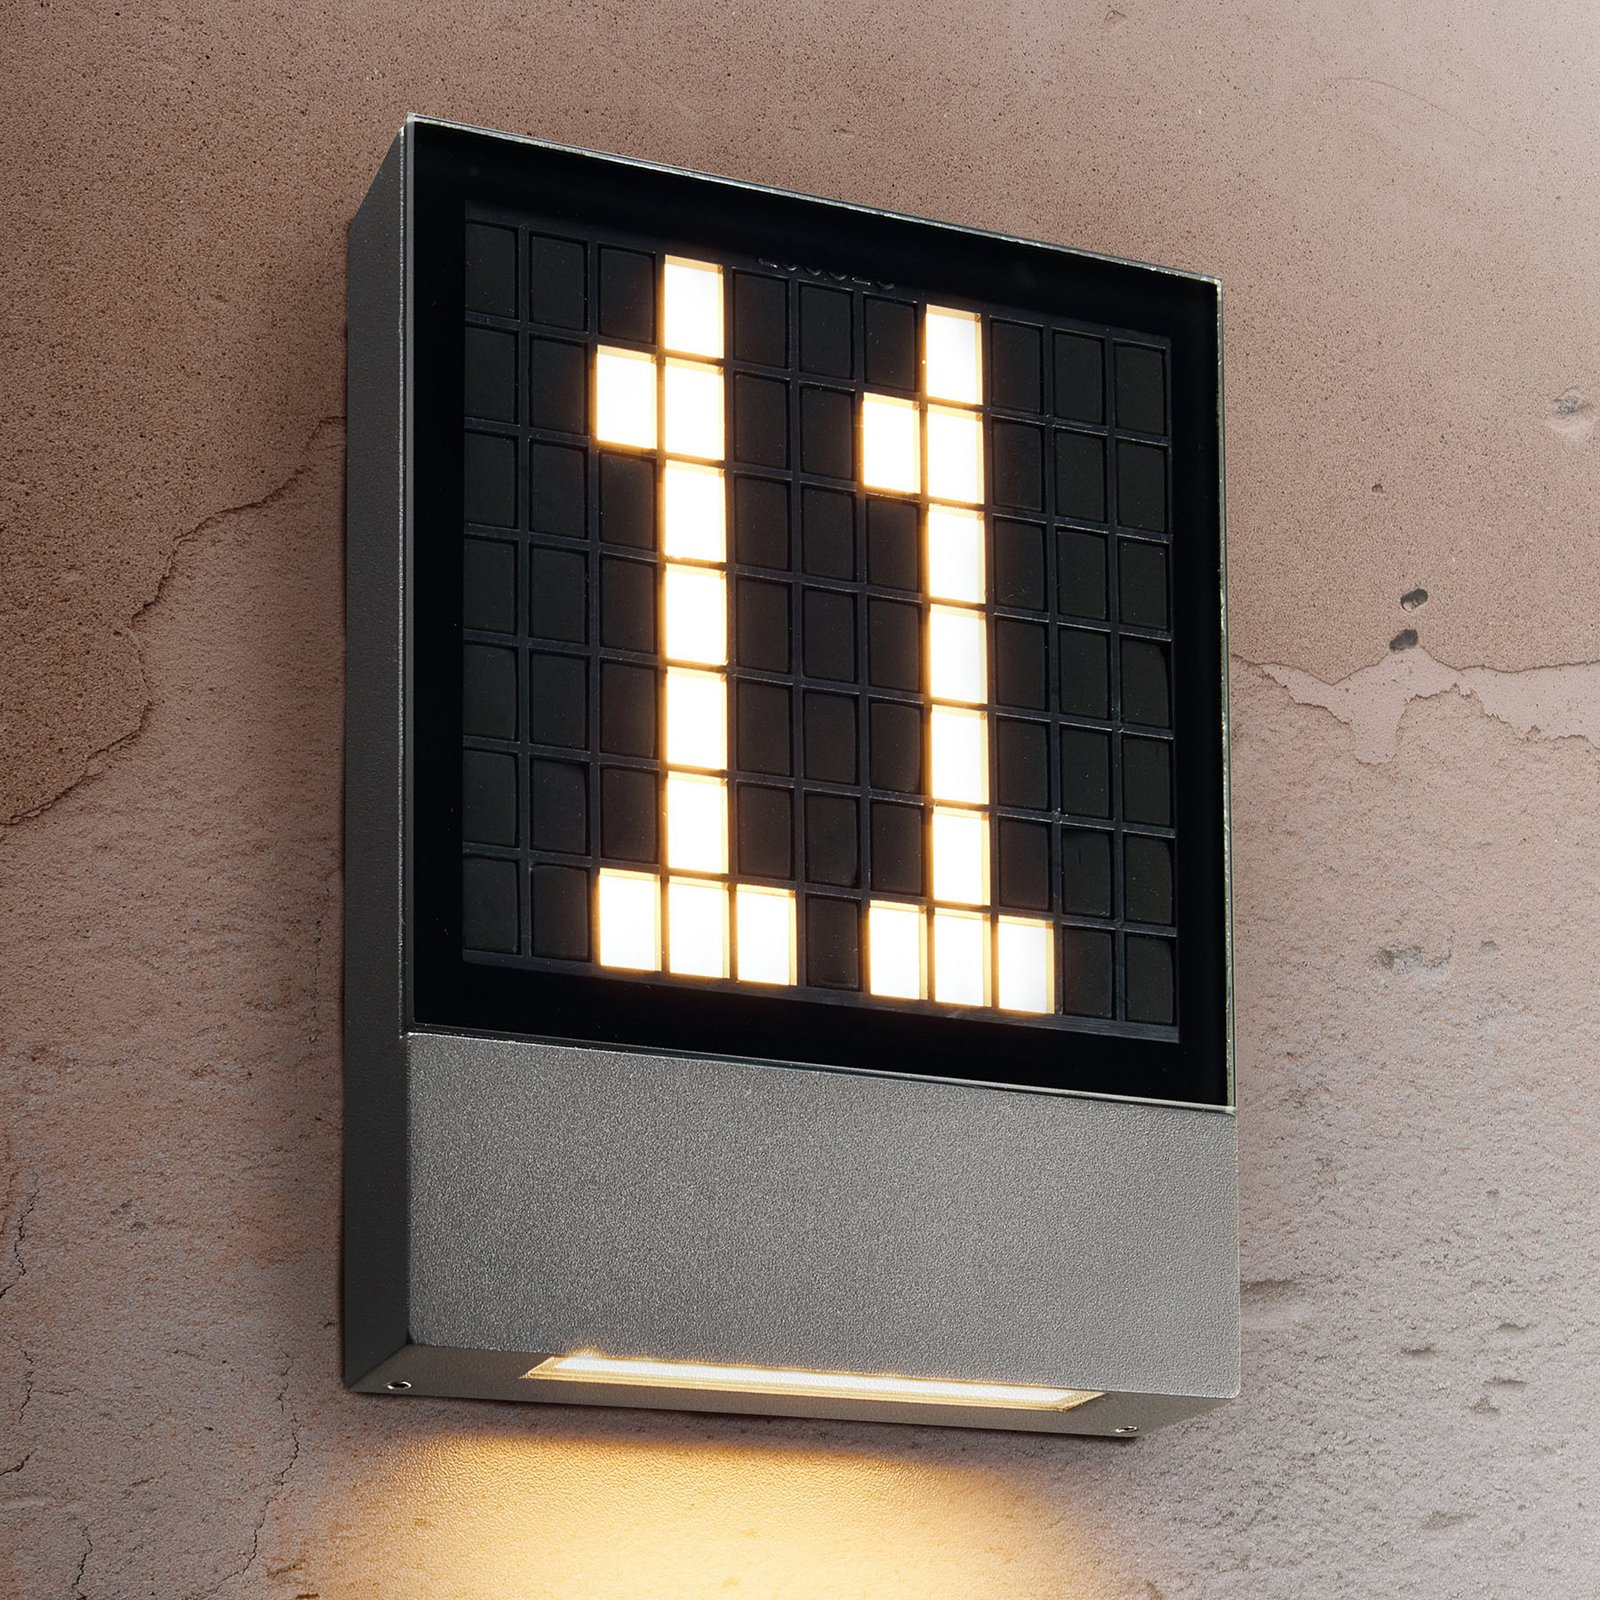 LED osvetlenie čísla domu Pavia, zásuvný systém